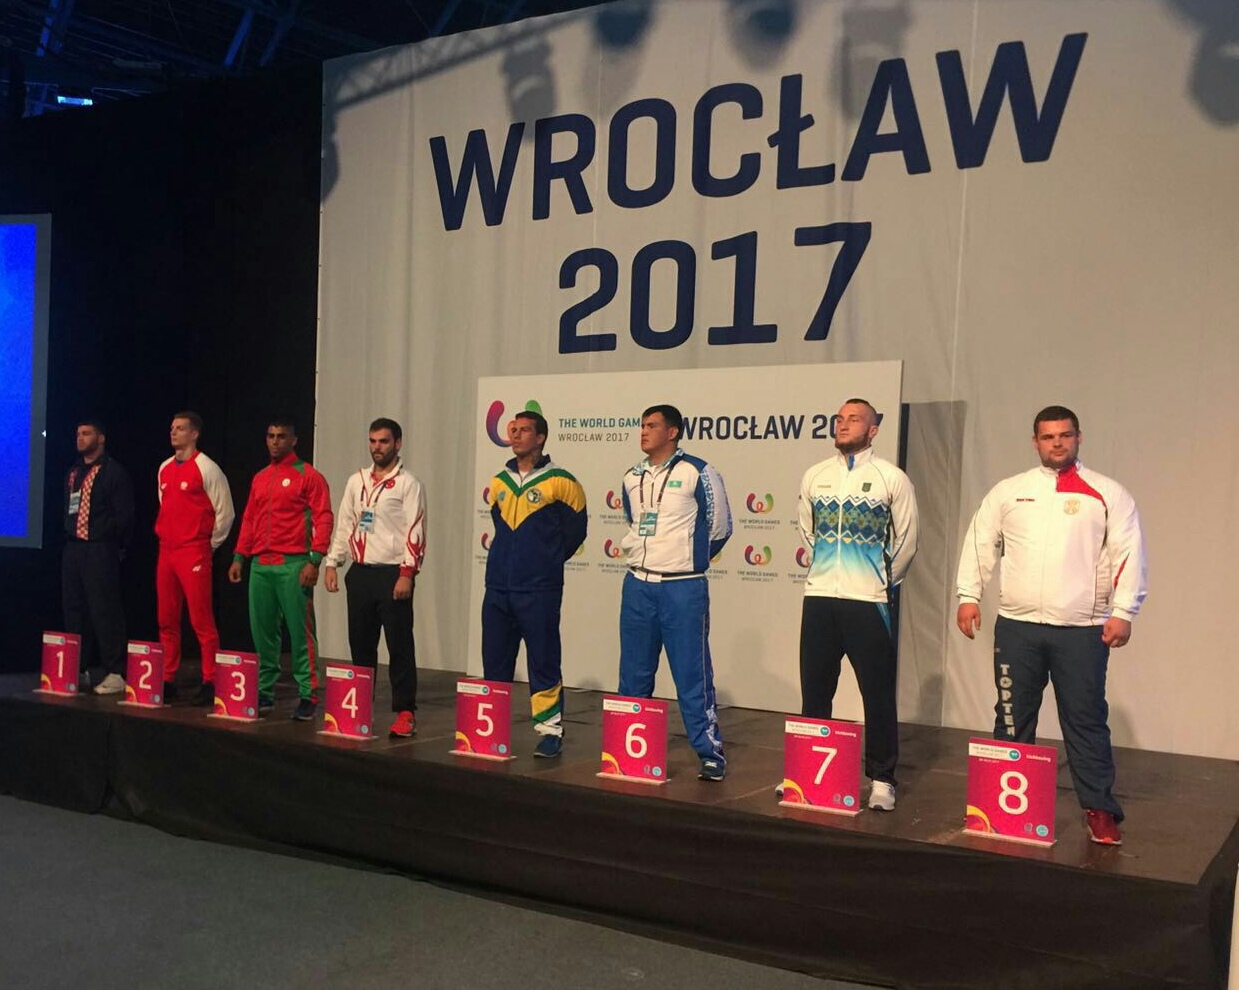 Ante Verunica na Svjetskim igrama u Wroclawu ide po polufinale